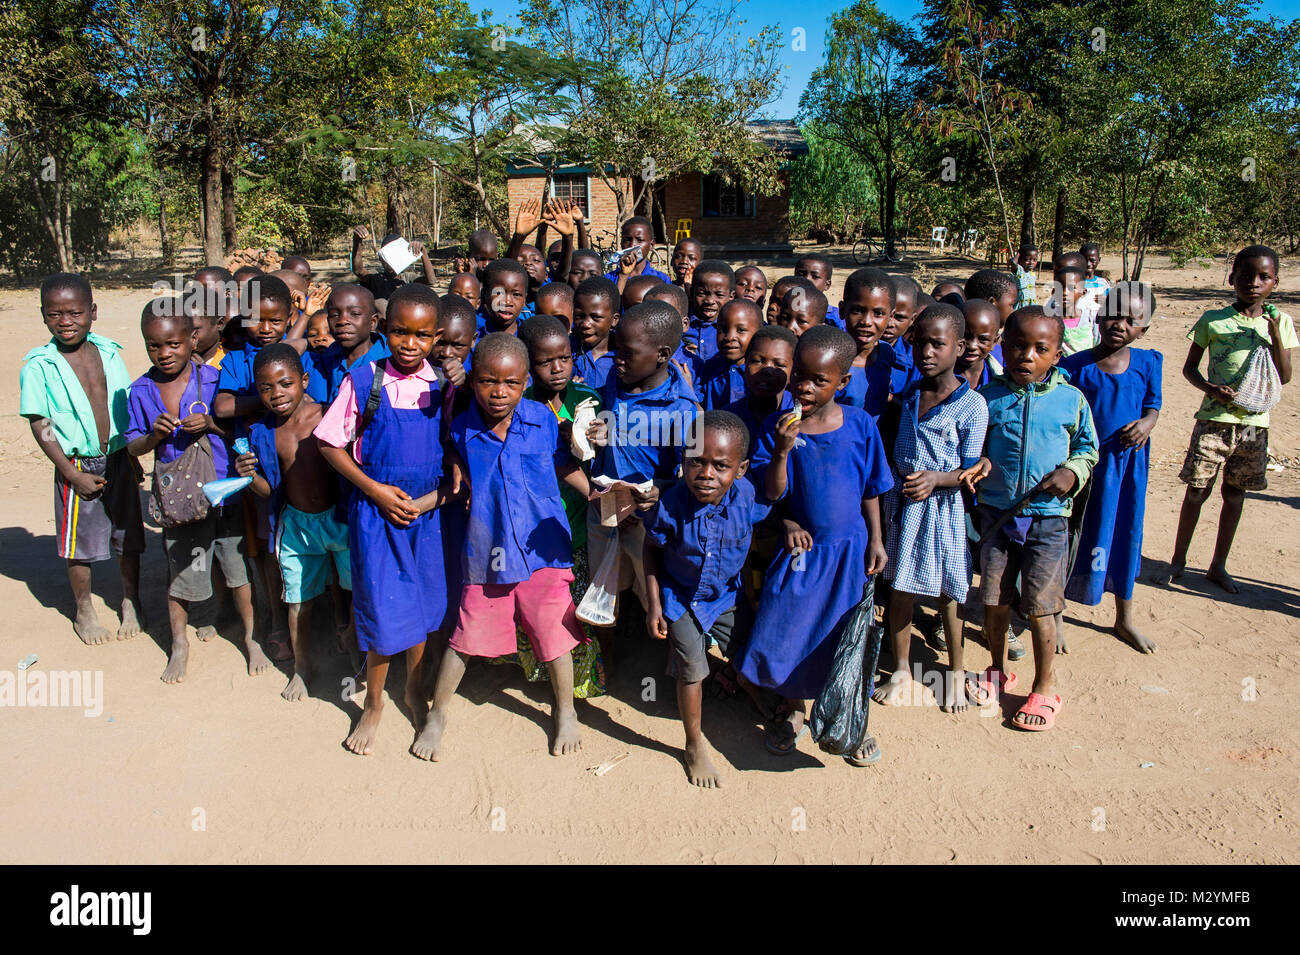 La scuola primaria su una strada polverosa con molti bambini, Liwonde National Park, Malawi, Africa Foto Stock